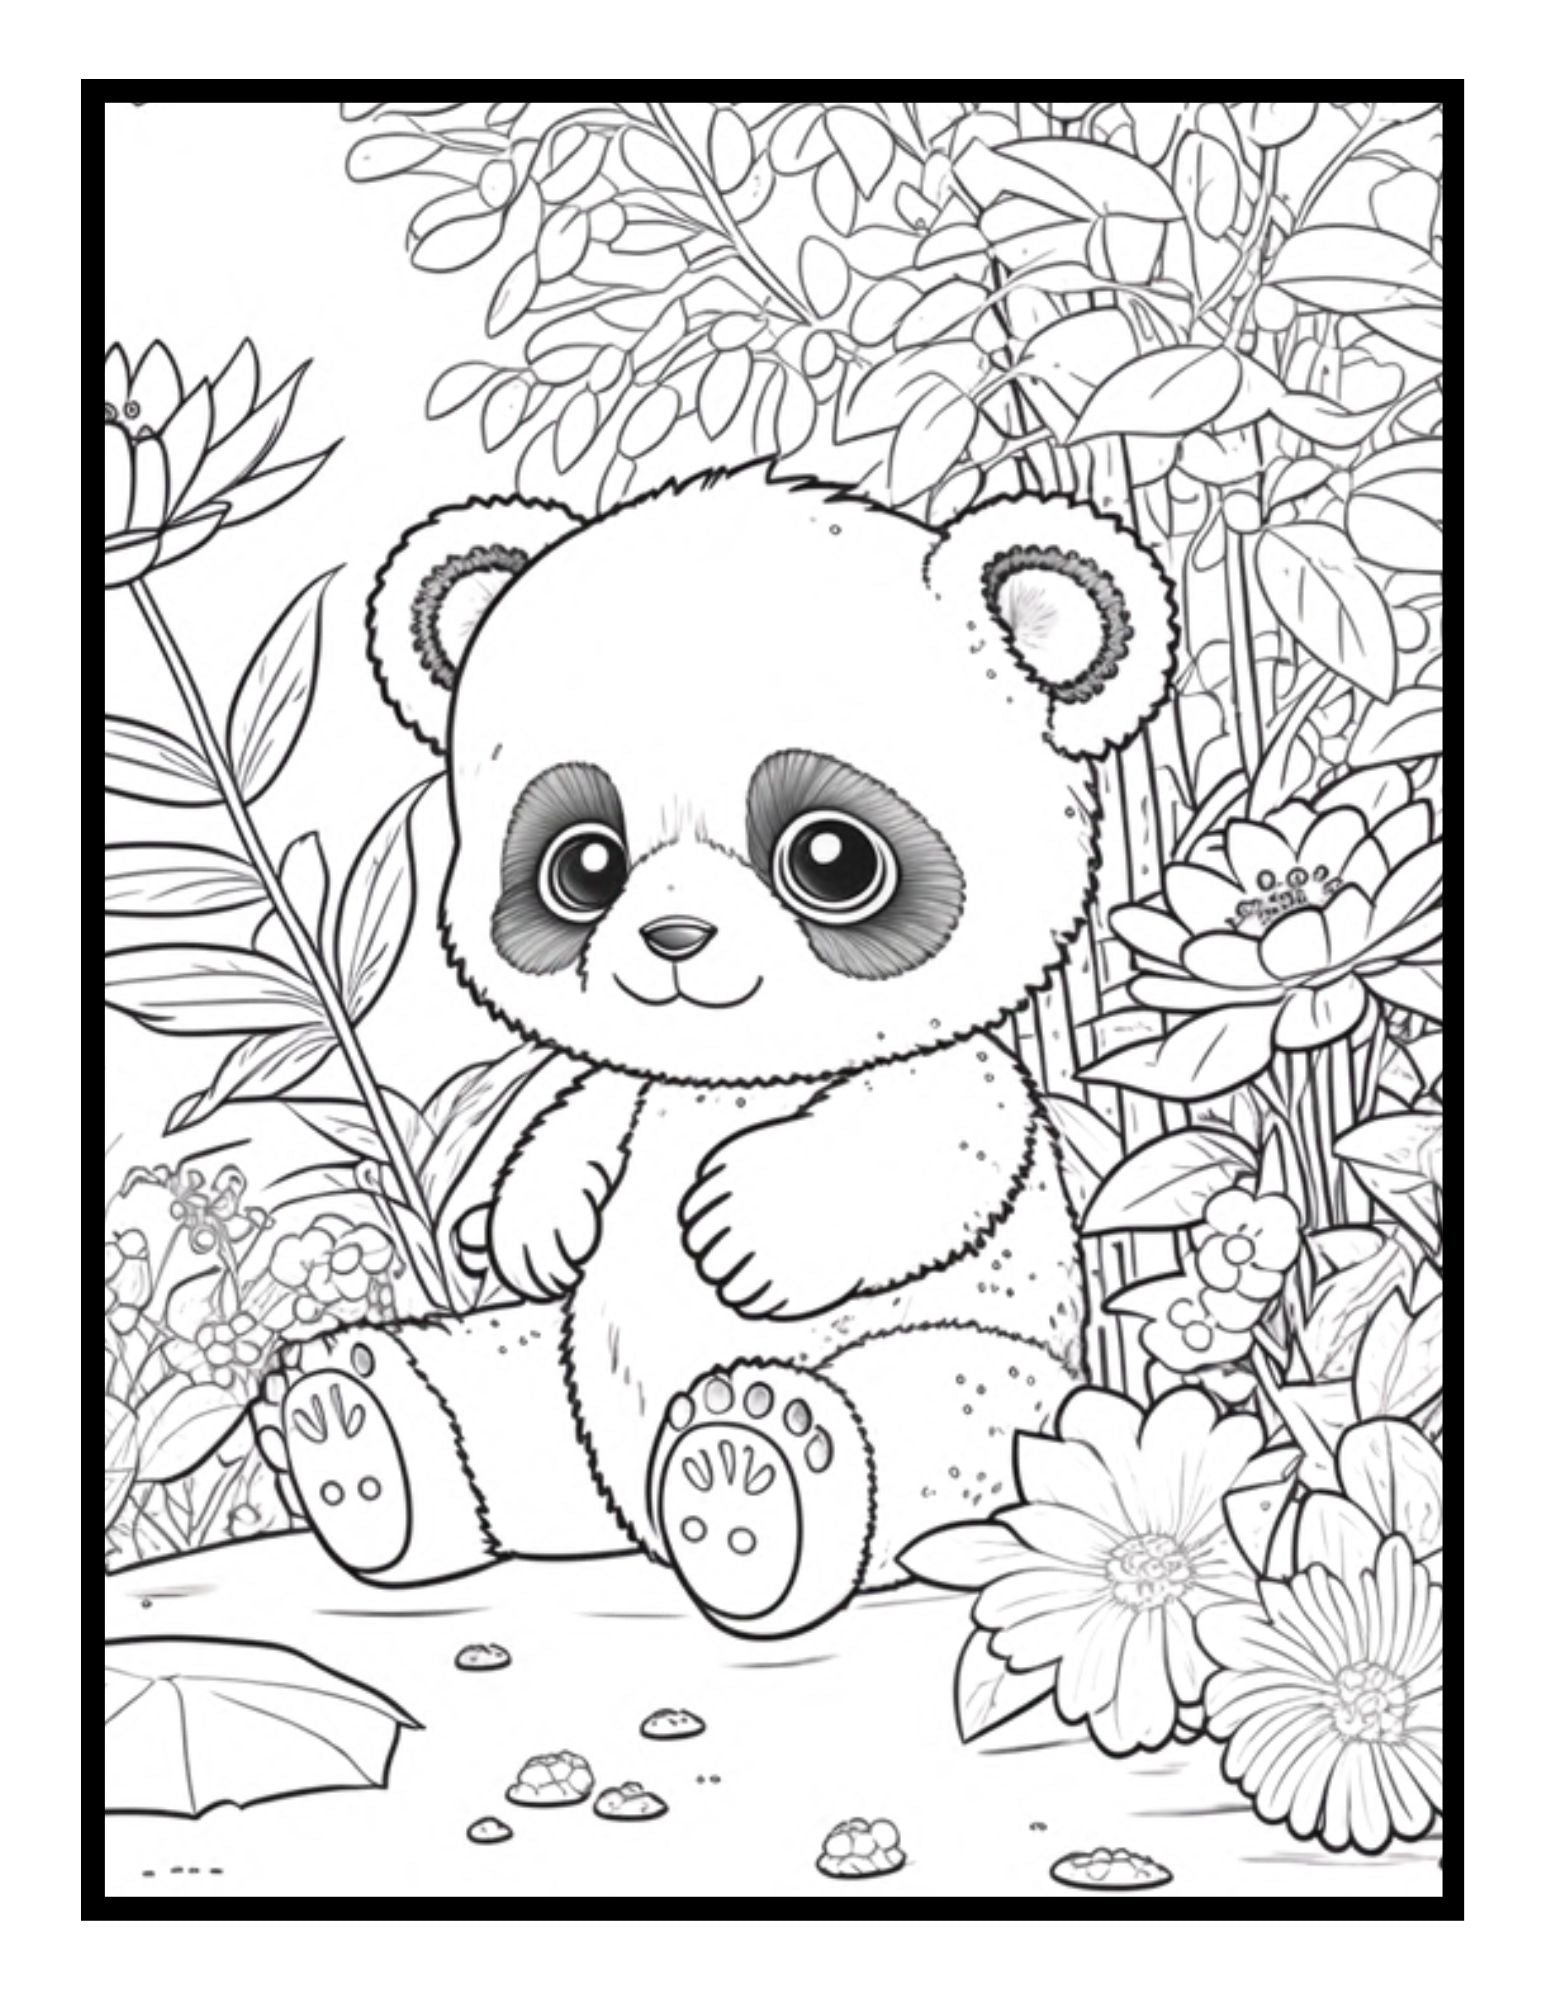 Cute panda coloring book jungle animal coloring sheets for kids teens â mode art design